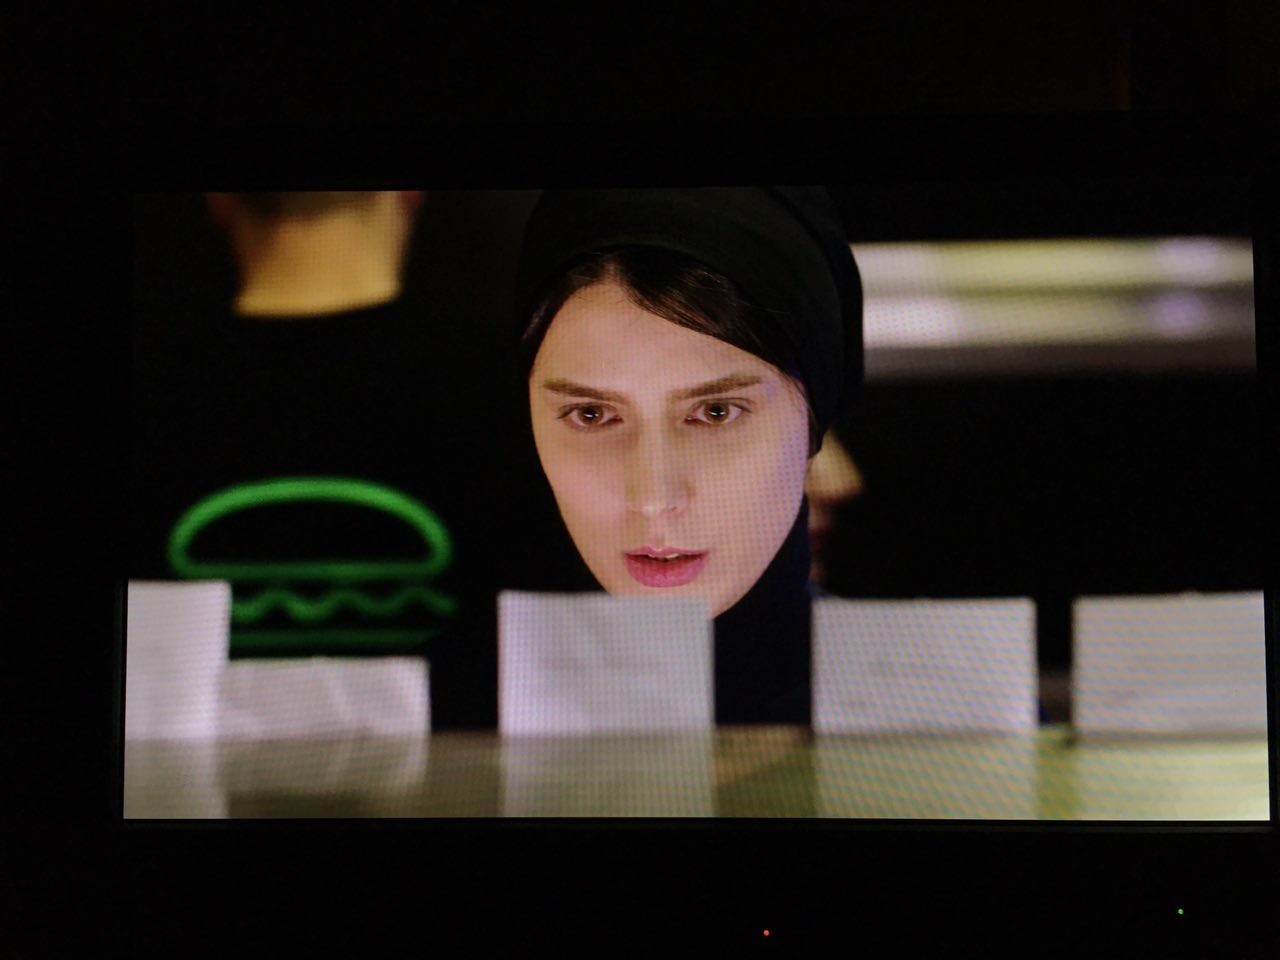  فیلم سینمایی رگ خواب با حضور لیلا حاتمی